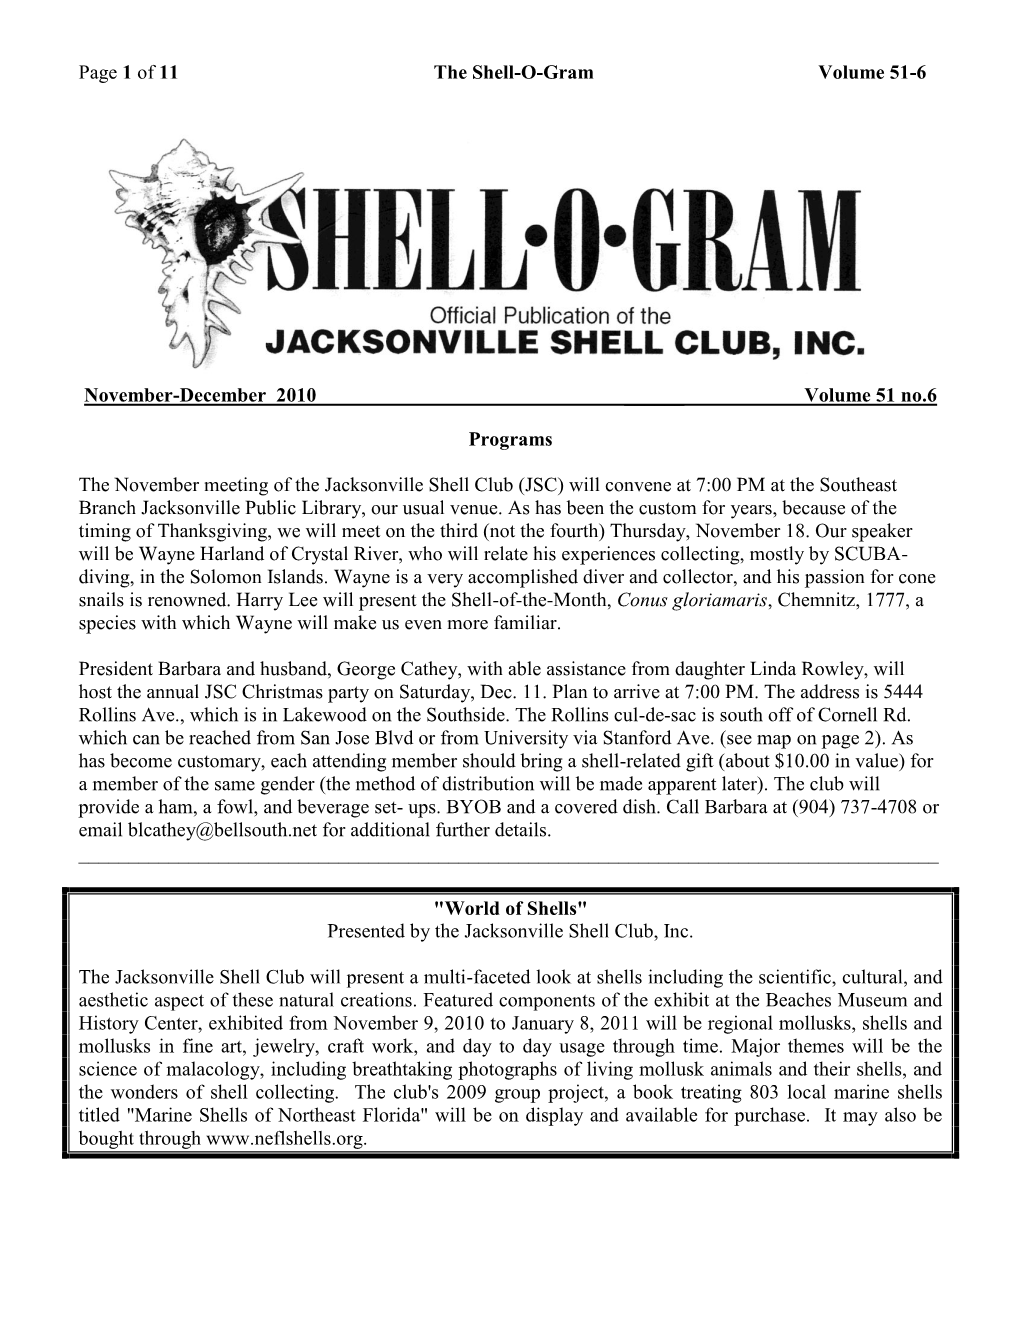 Of 11 the Shell-O-Gram Volume 51-6 November-December 2010